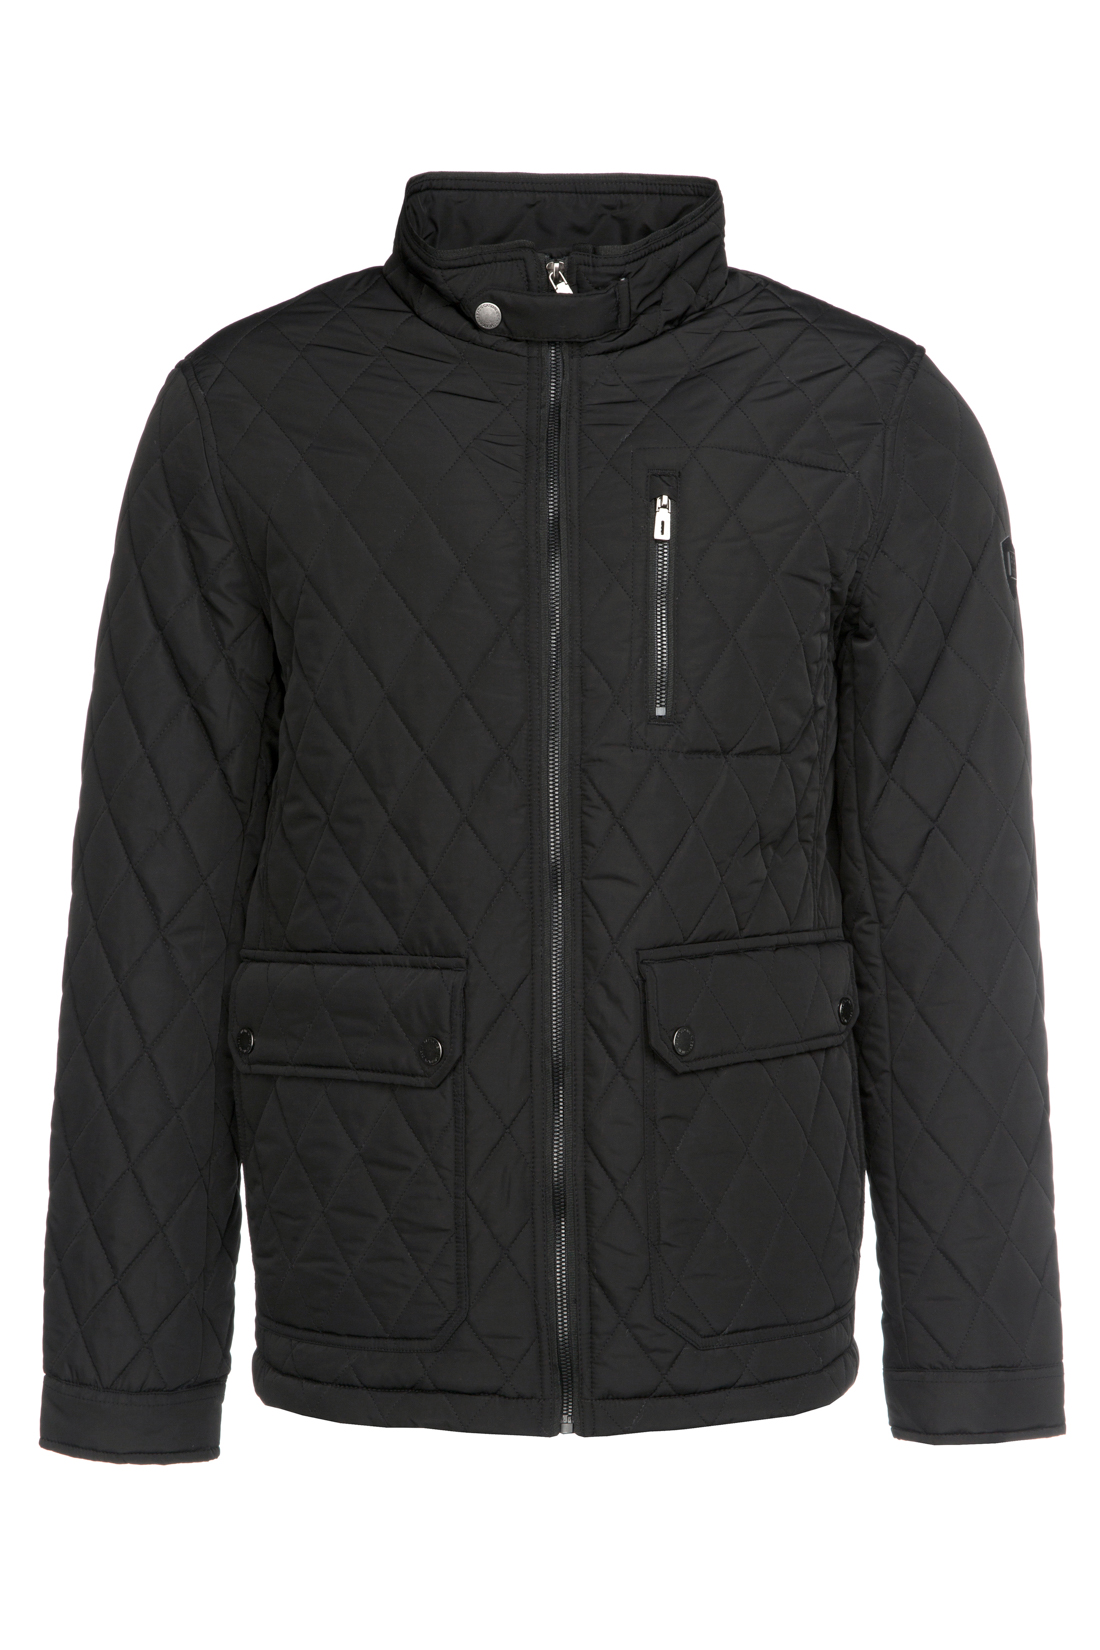 Стёганая куртка с воротником-стойкой (арт. baon B537017), размер M, цвет черный Стёганая куртка с воротником-стойкой (арт. baon B537017) - фото 4